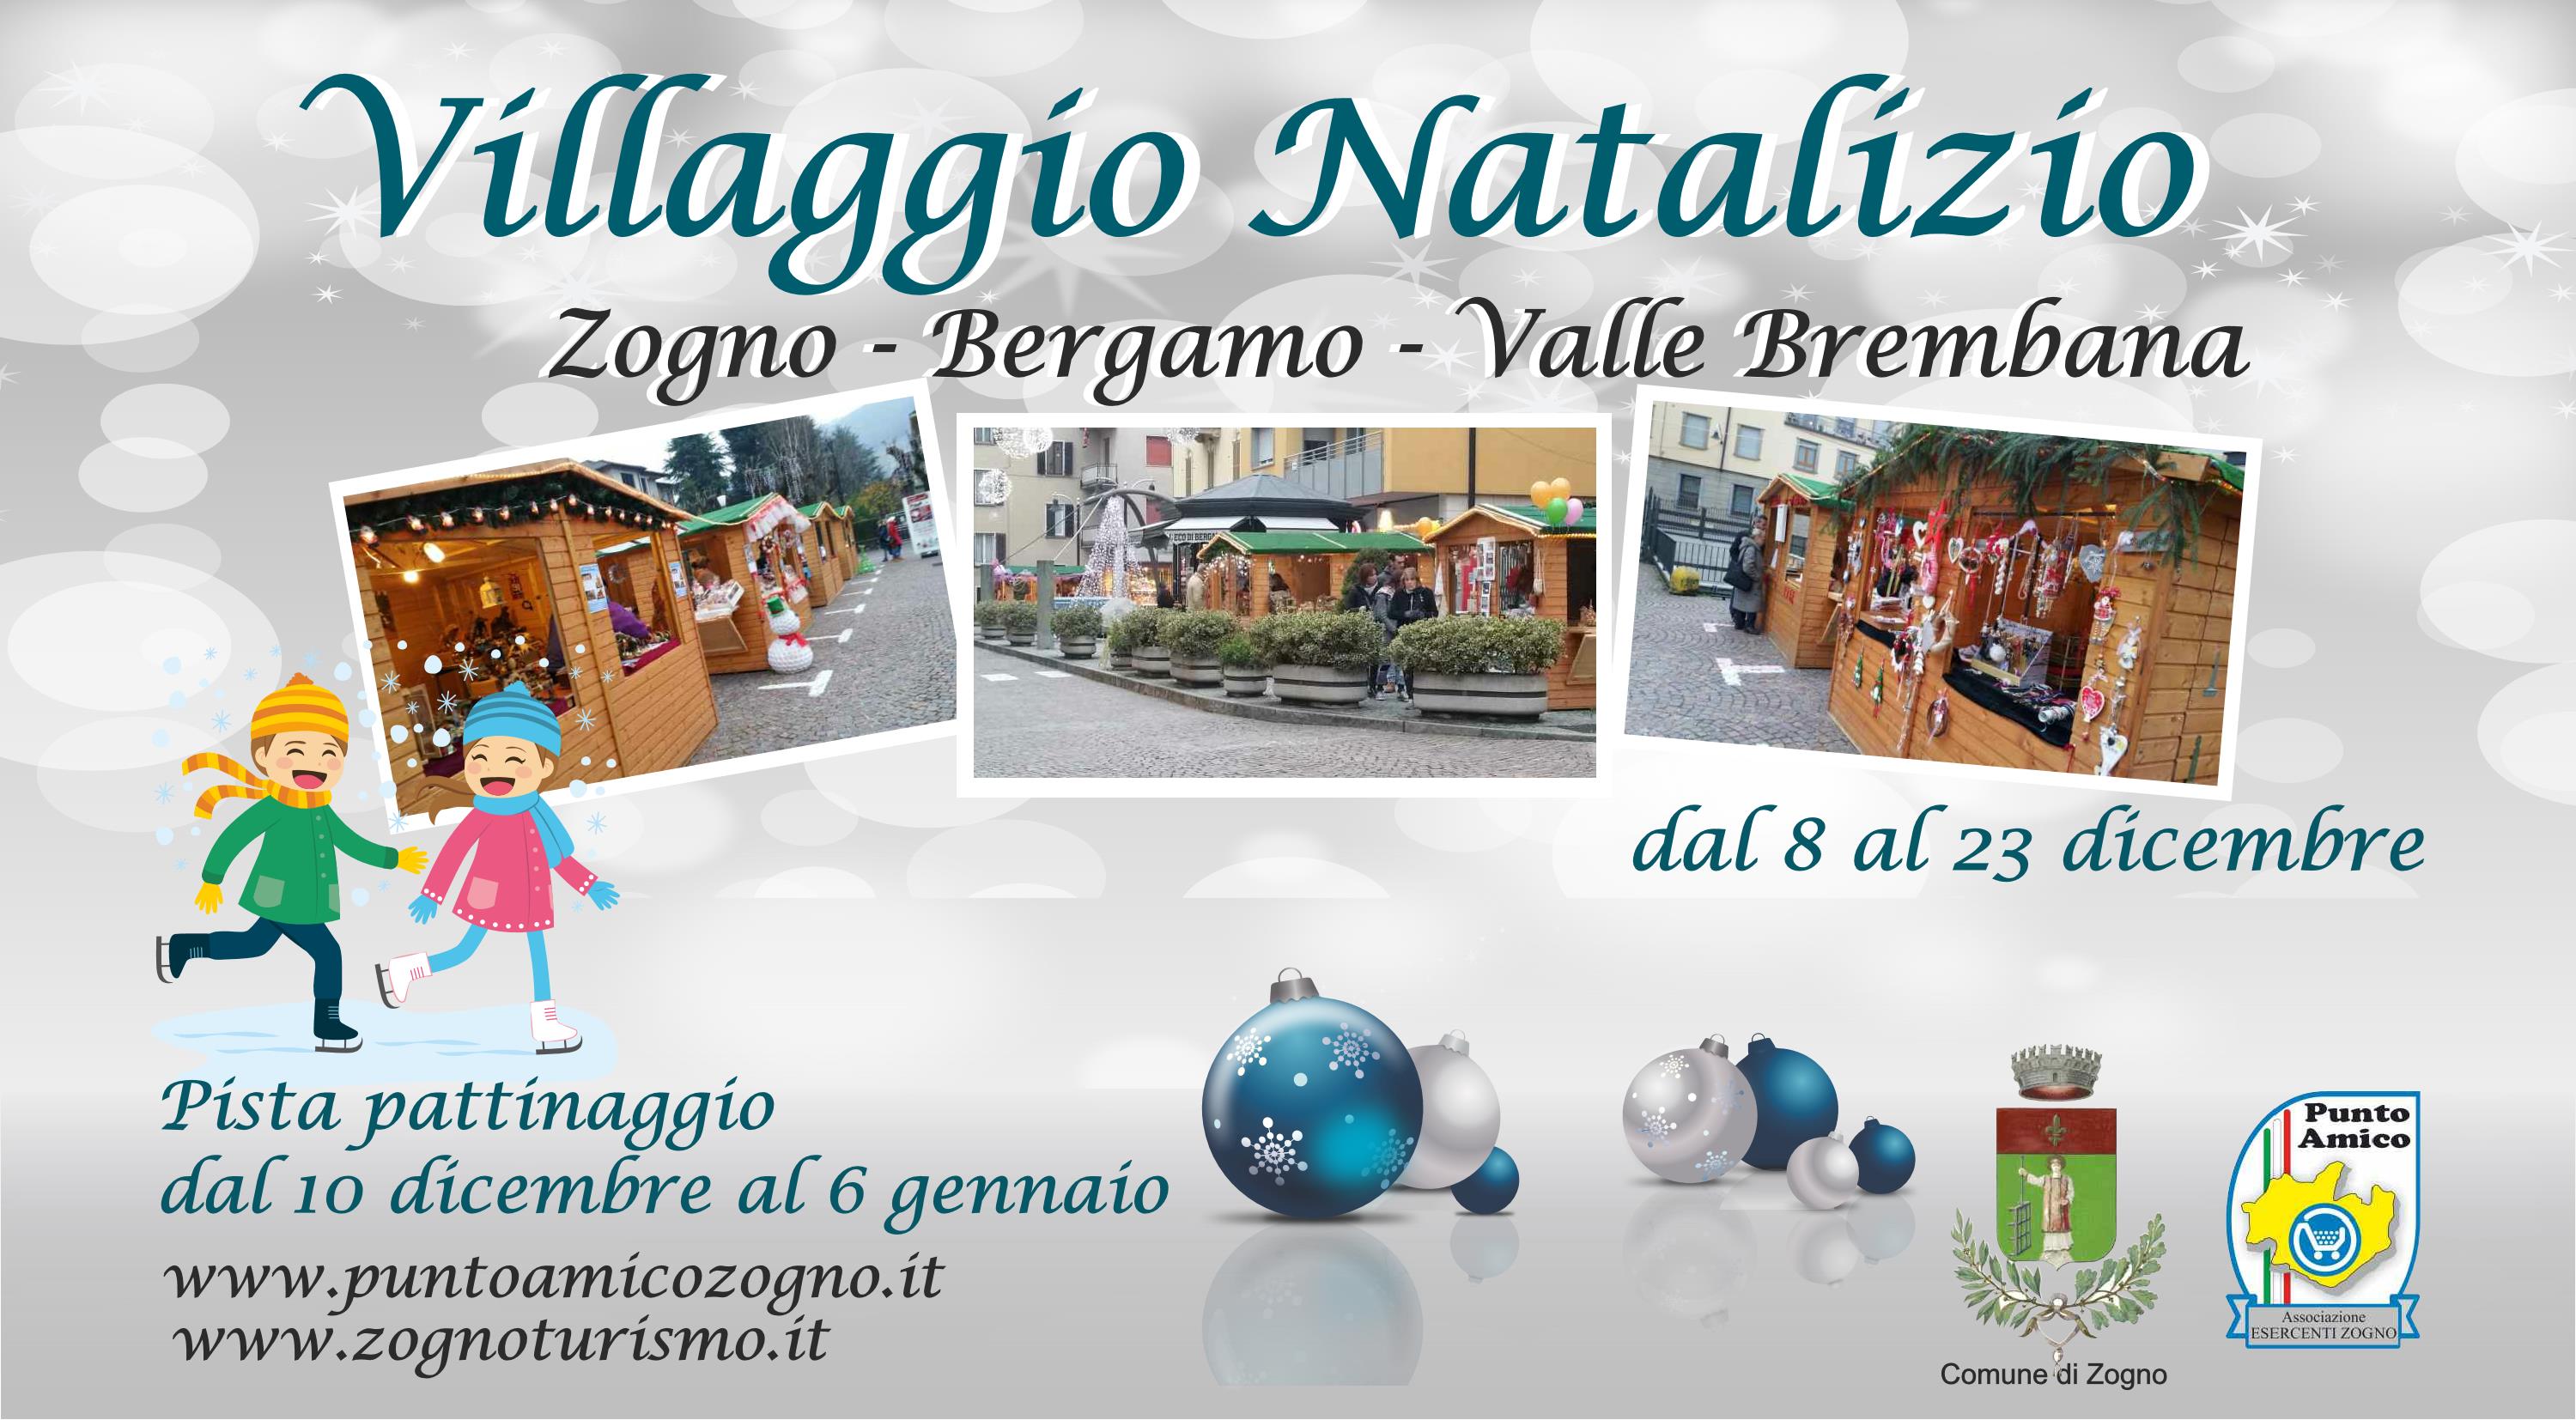  Villaggio Natalizio dal 8 al 23 dicembre